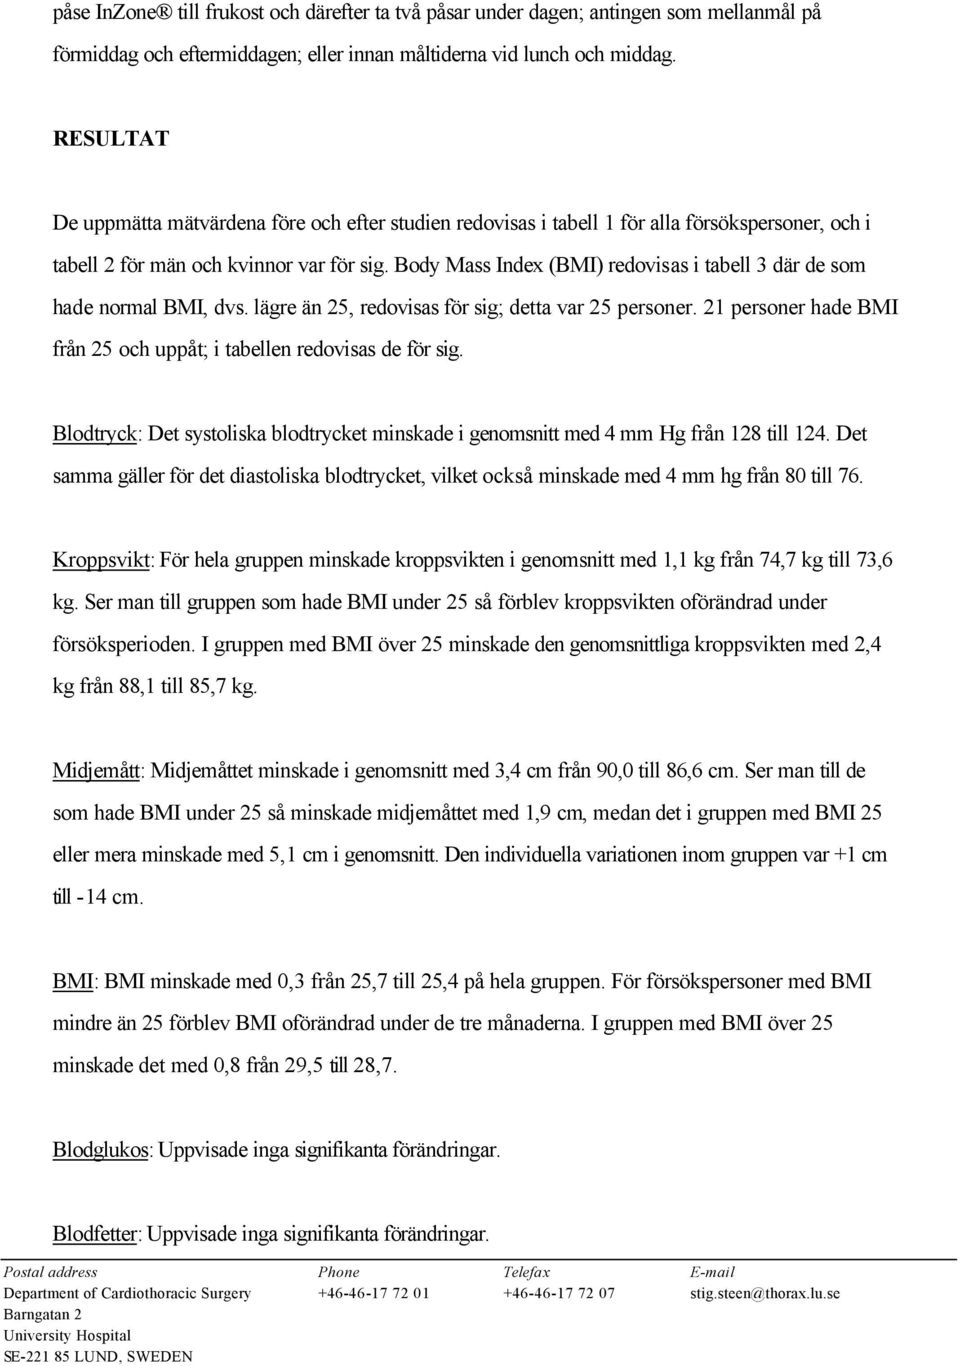 Body Mass Index (BMI) redovisas i tabell 3 där de som hade normal BMI, dvs. lägre än 25, redovisas för sig; detta var 25 personer.